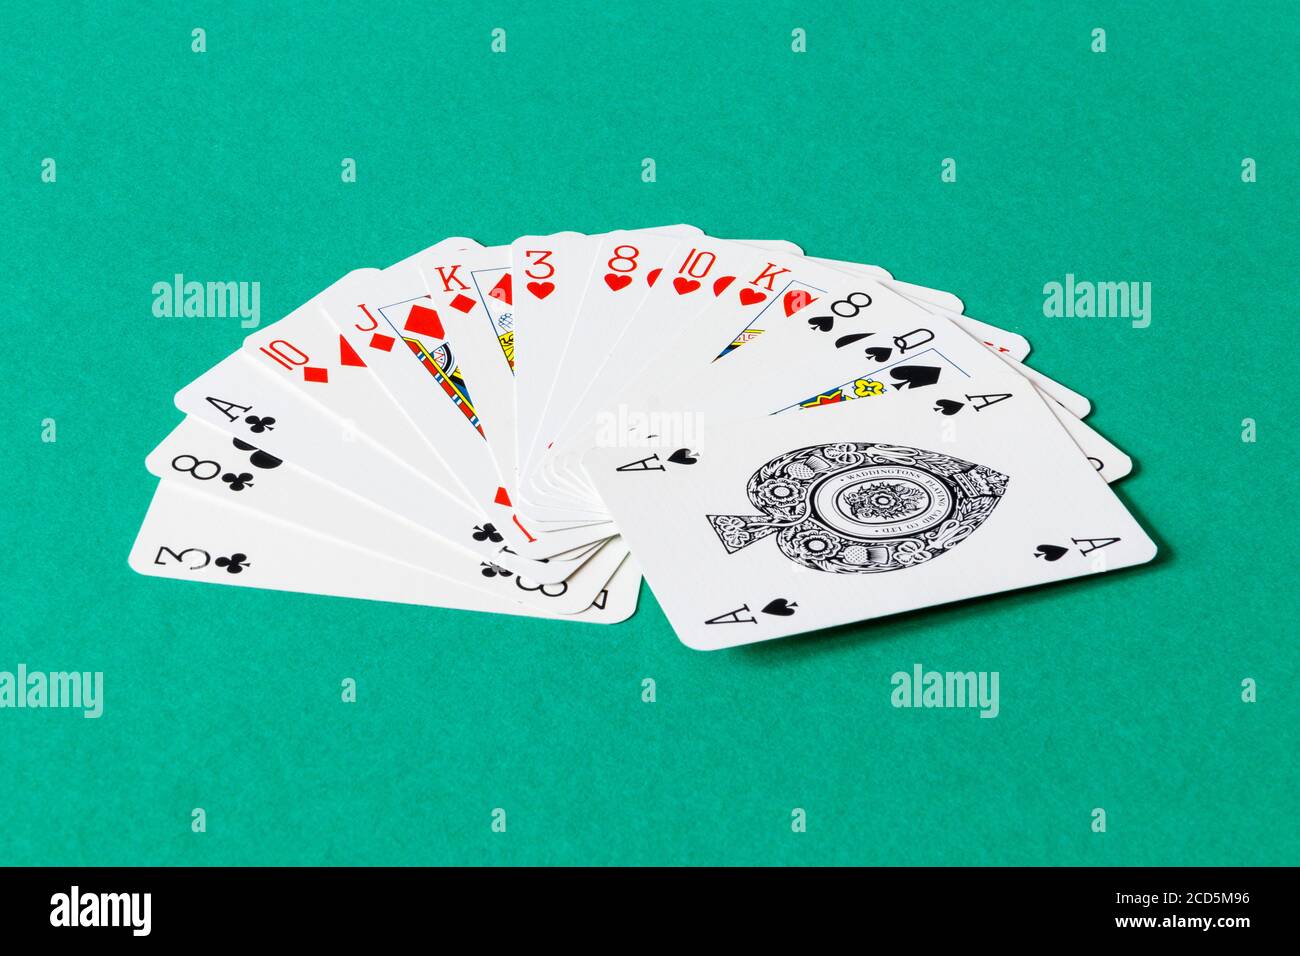 Eine gleichmäßig verteilte (4333 Verteilung) biddable Hand von 13 Karten, sortiert in Farben und Rang, in einem Spiel der Kontraktbrücke, zeigt 17 High-Card Punkte Stockfoto